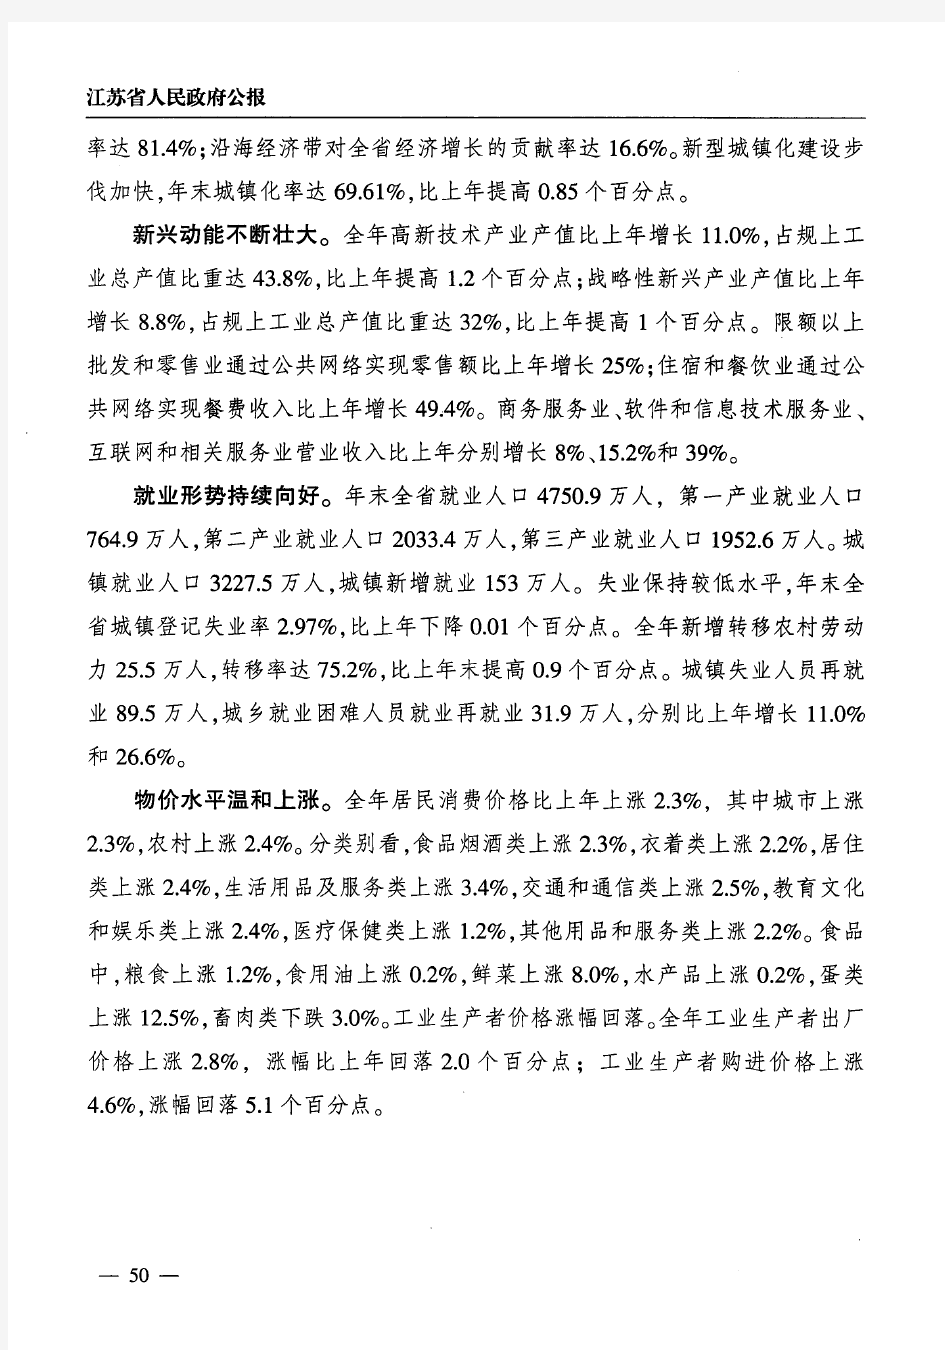 2018年江苏省国民经济和社会发展统计公报